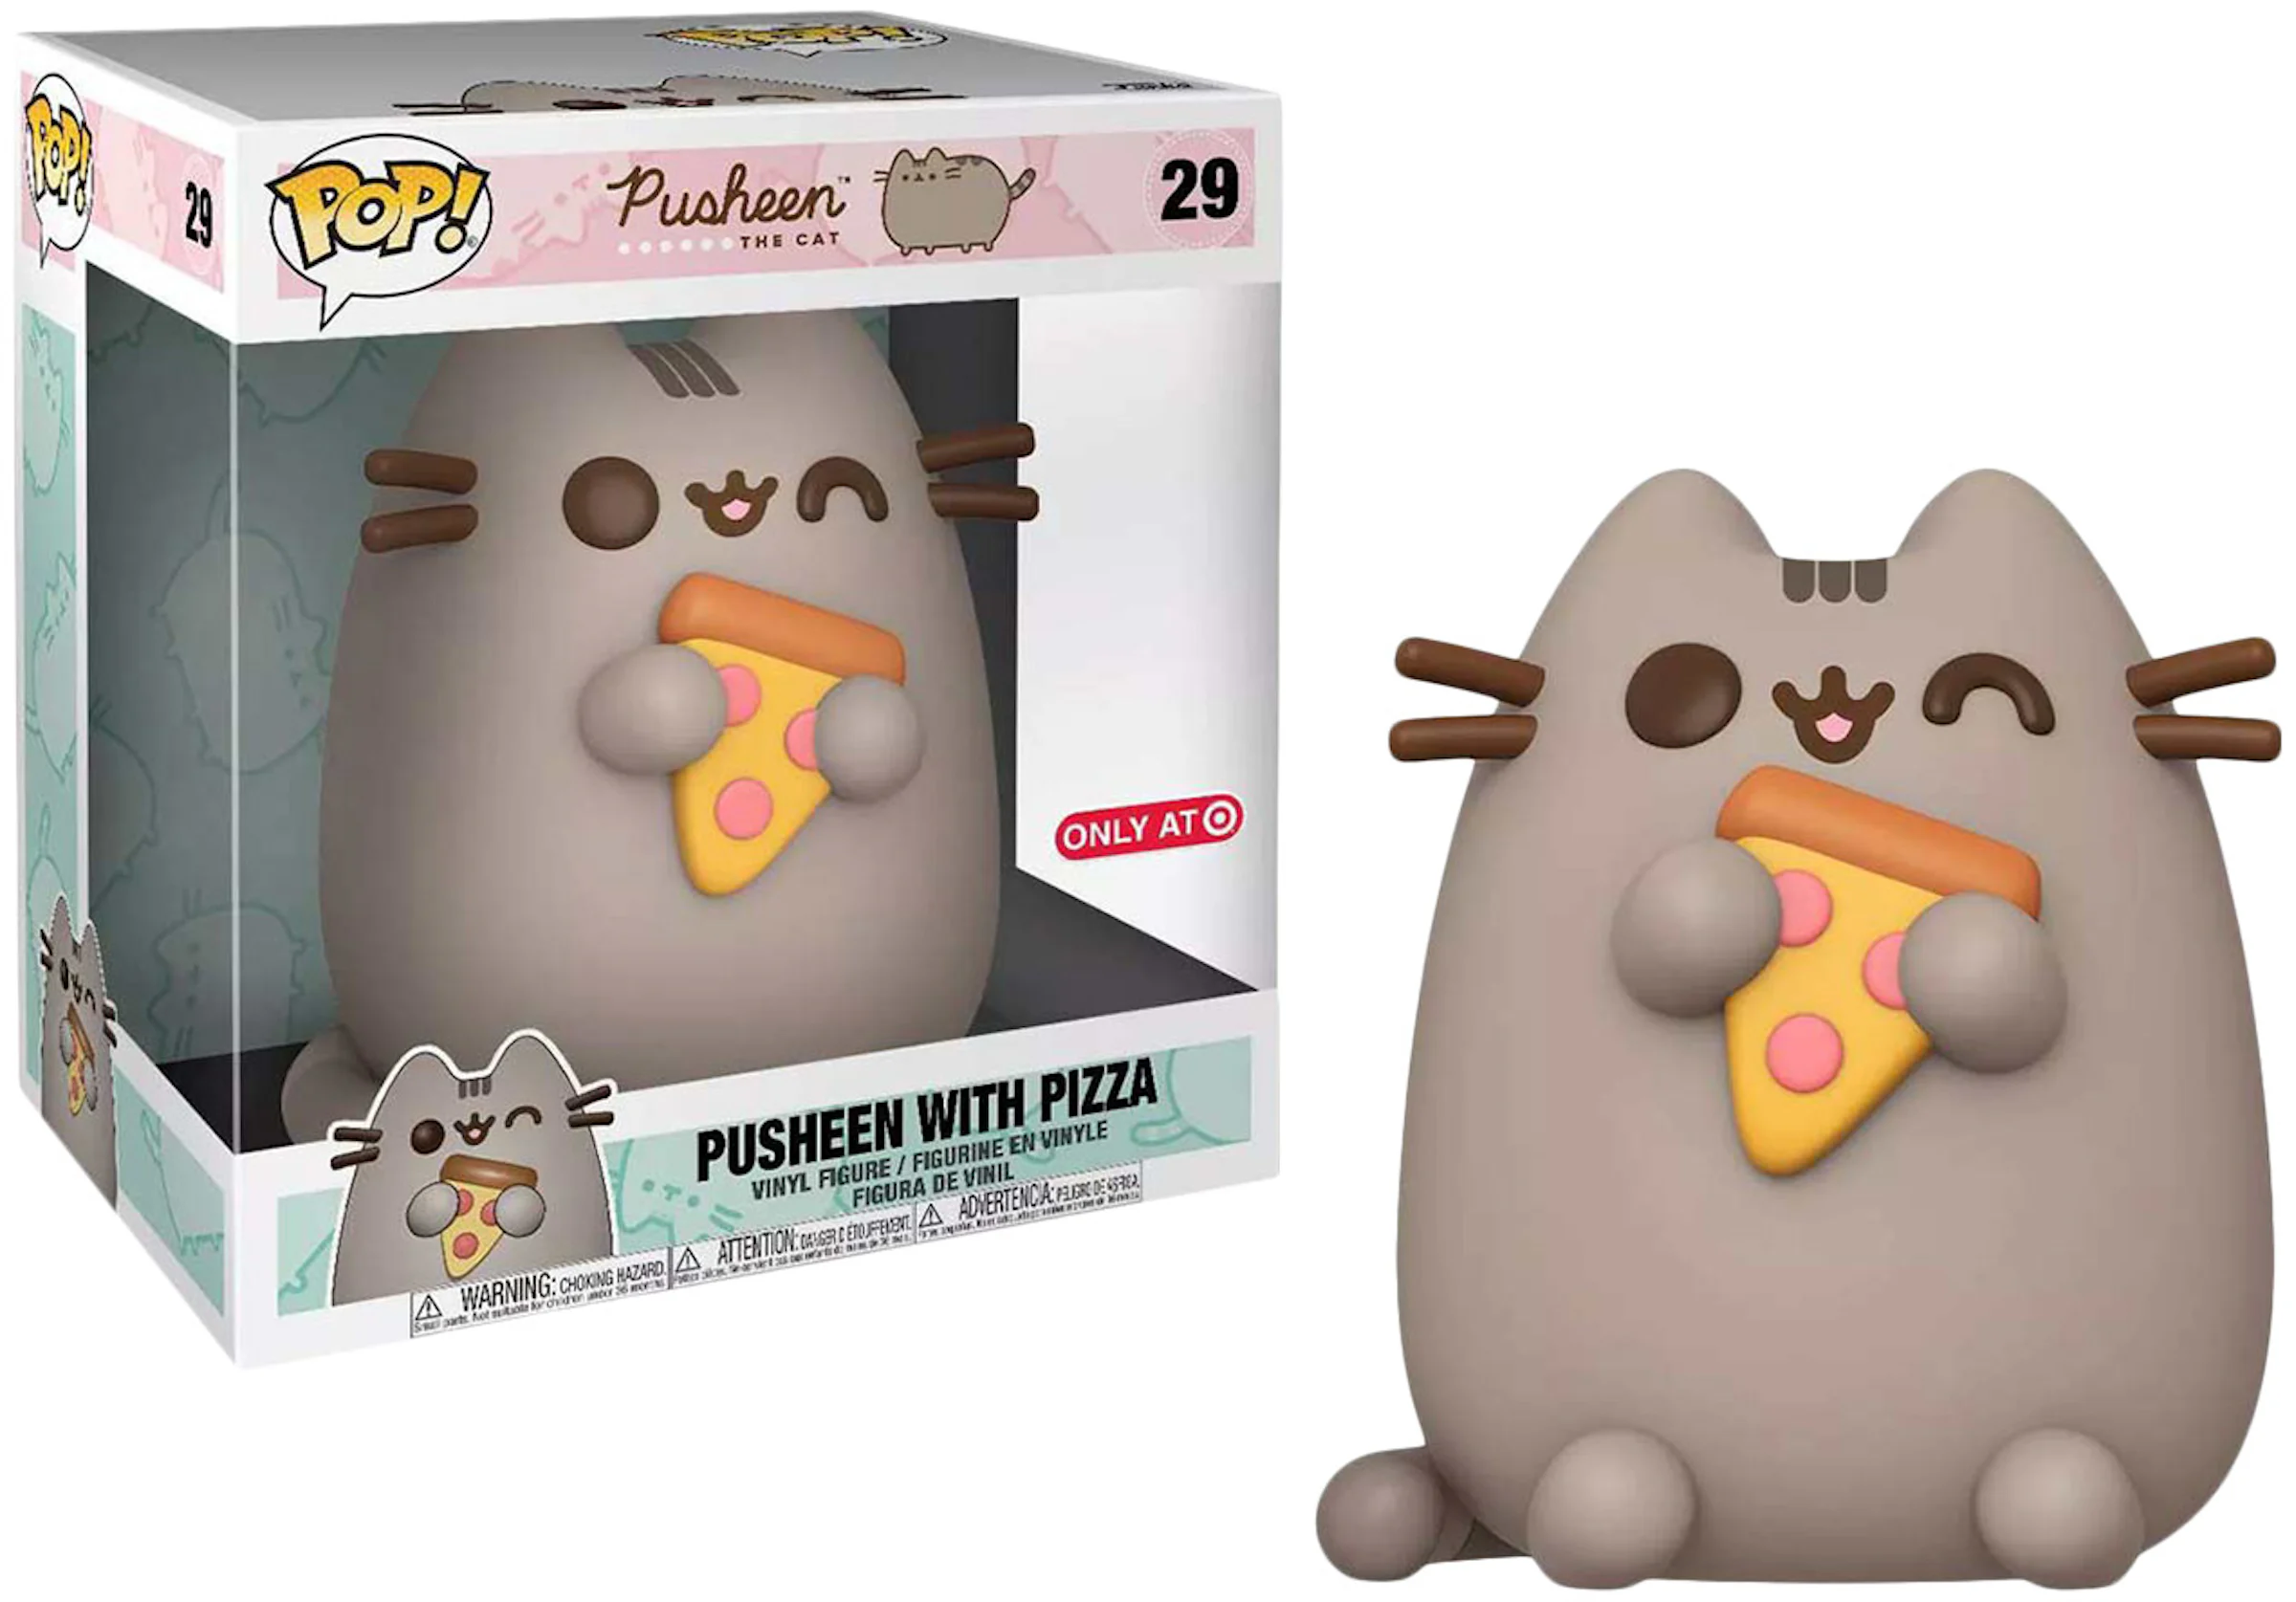 Funko Pop! Pusheen The Cat Pusheen With Pizza 10 Inch Target Exclusive  Figure #29 for Men